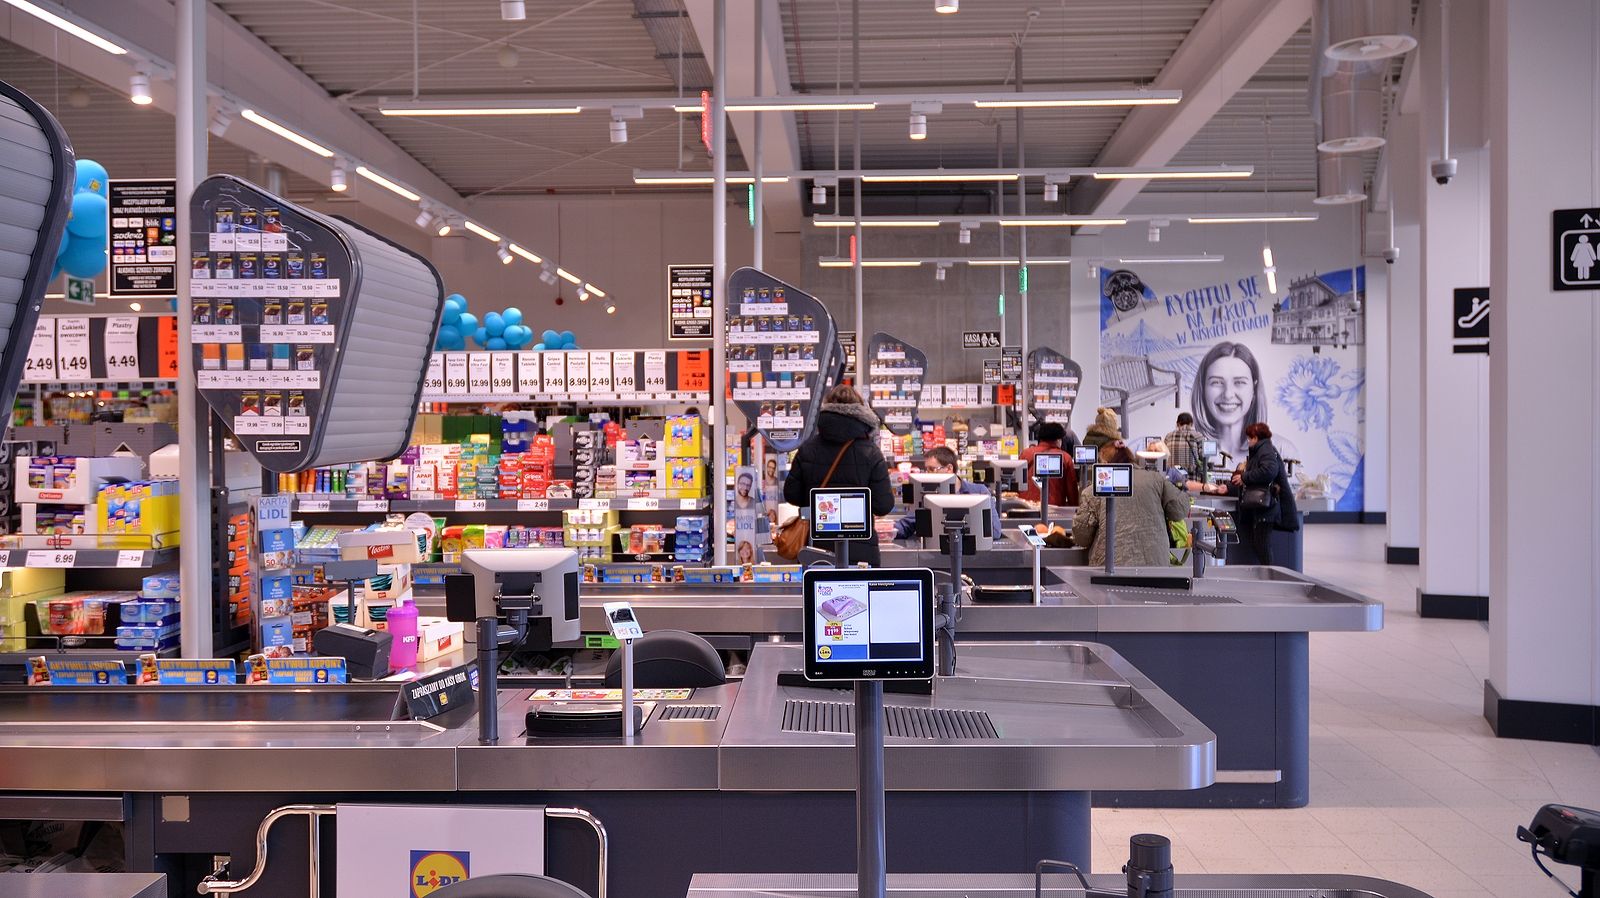 Si te cuesta encontrar ropa de tallas grandes a buen precio, pásate por este supermercado (Foto Bigstock) 2